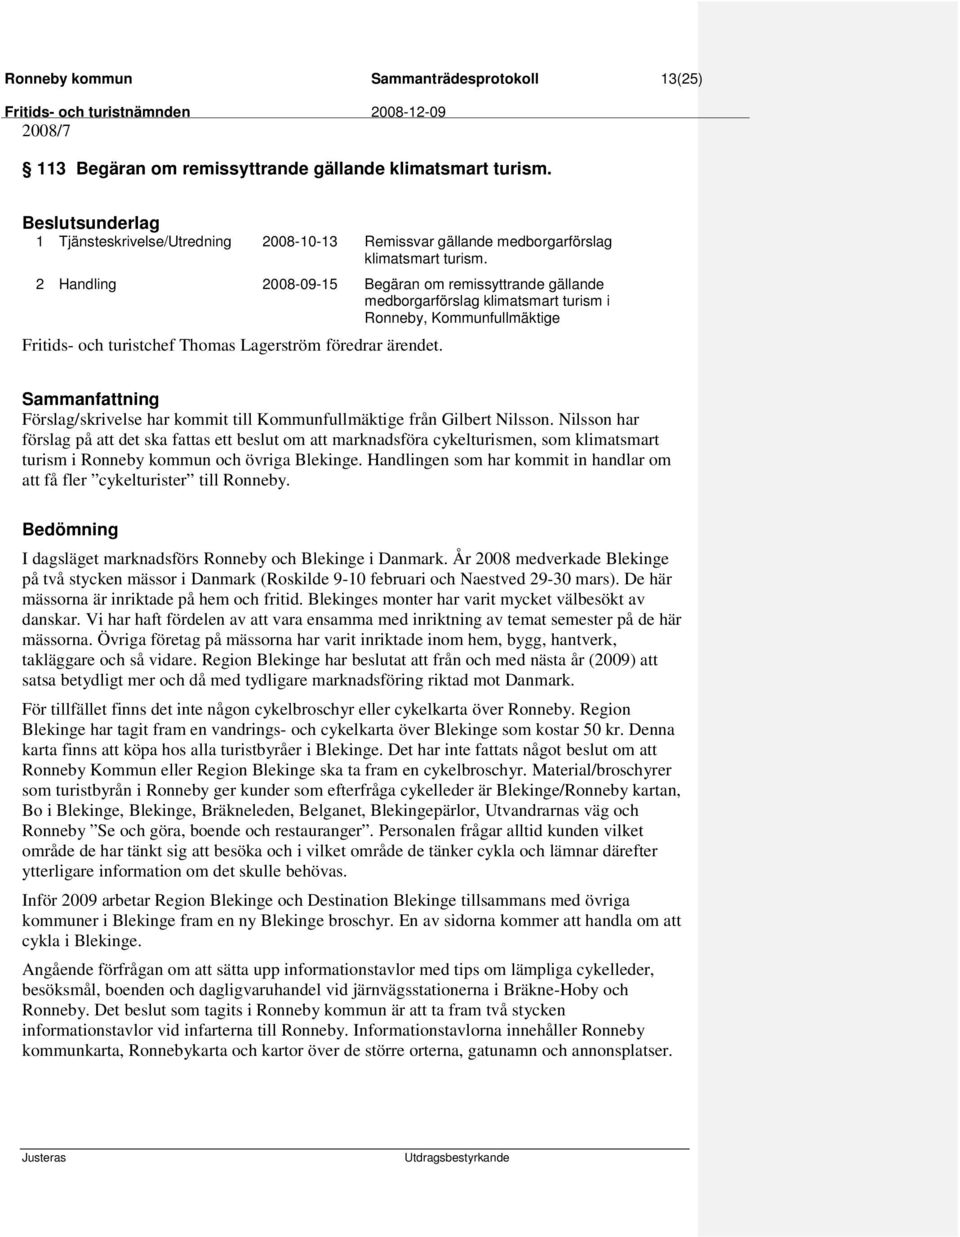 2 Handling 2008-09-15 Begäran om remissyttrande gällande medborgarförslag klimatsmart turism i Ronneby, Kommunfullmäktige Förslag/skrivelse har kommit till Kommunfullmäktige från Gilbert Nilsson.